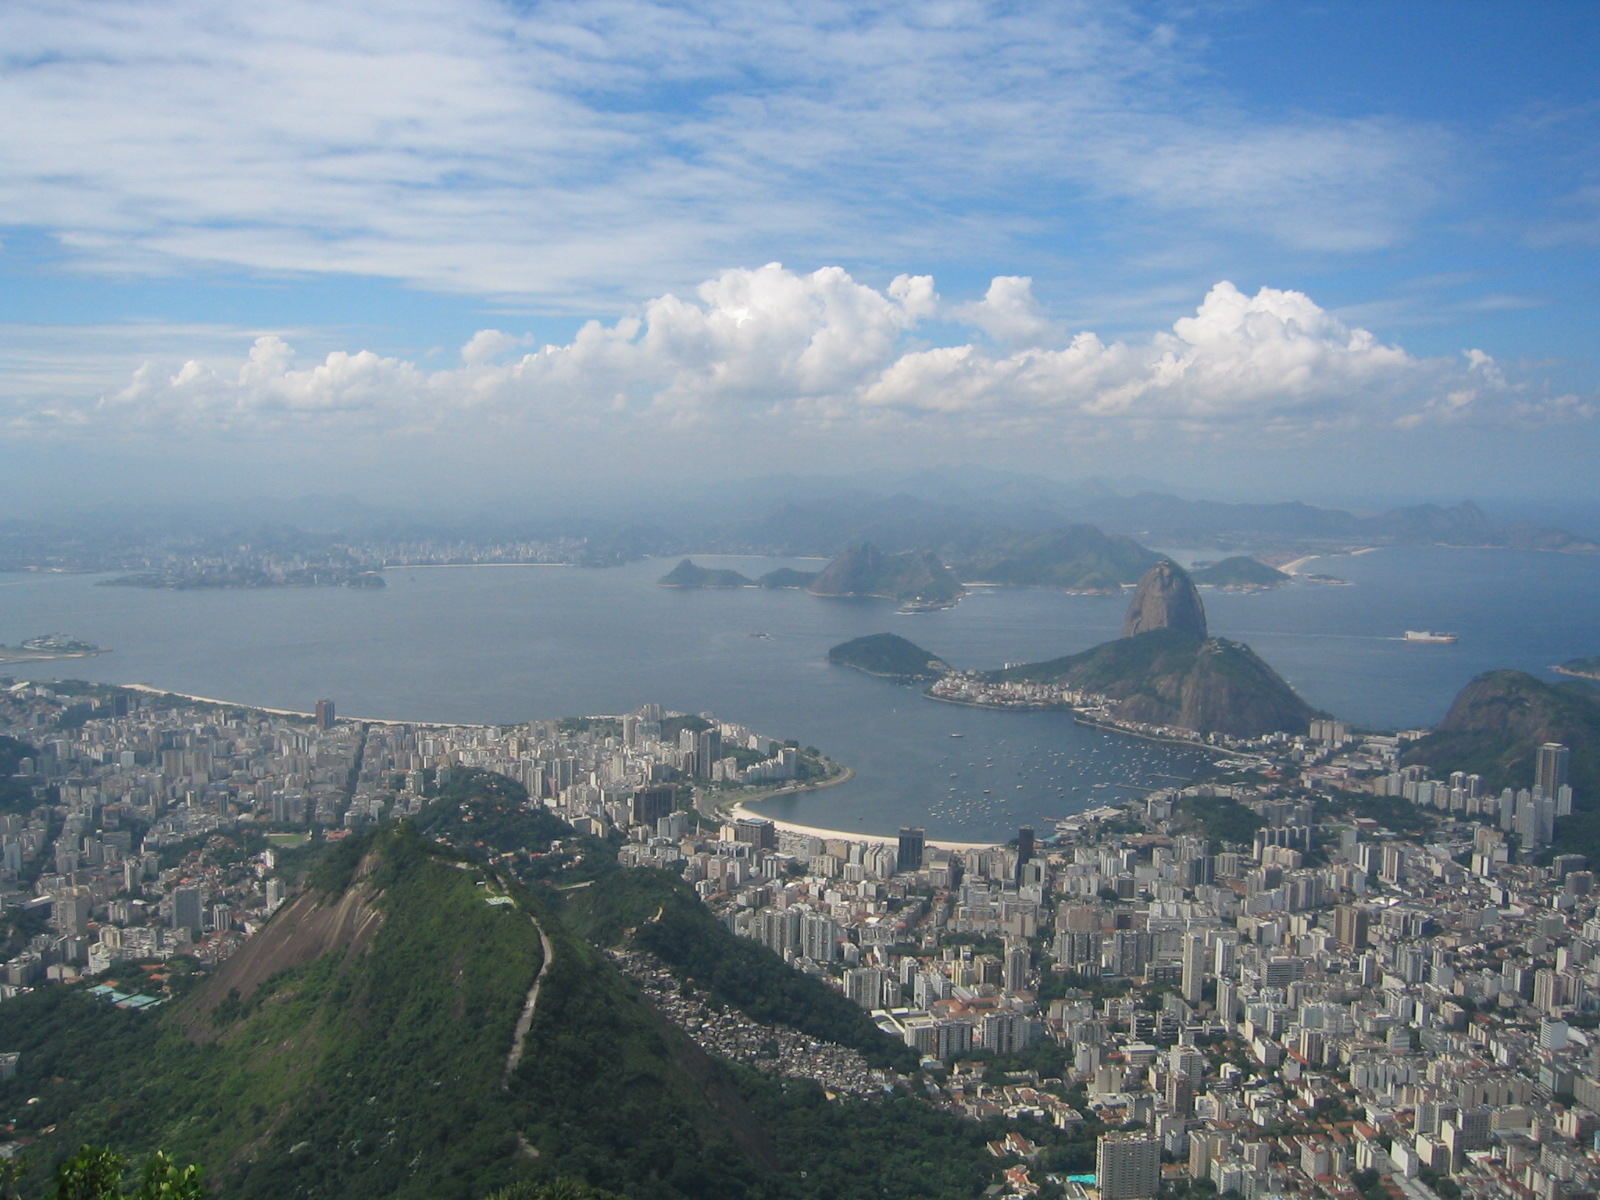  - Rio_de_Janeiro_from_Corcovado